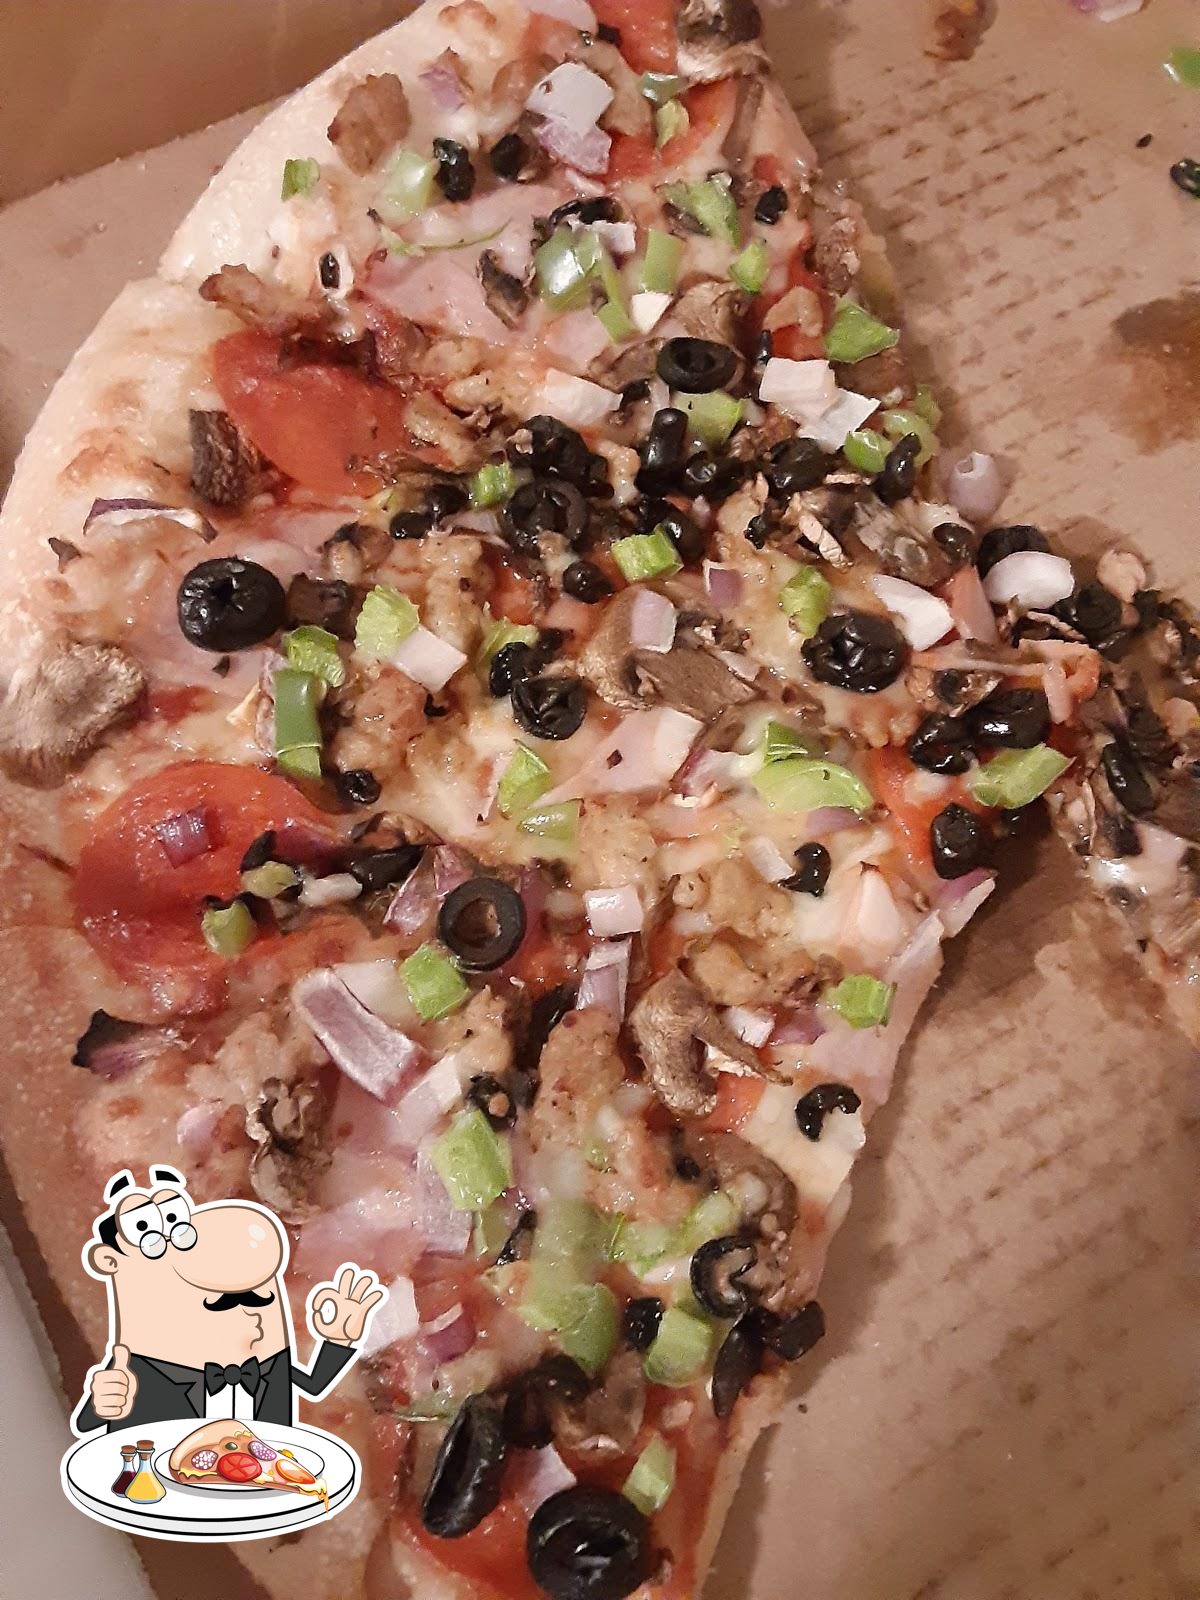 BIG PAPA PIZZA - 825 W Southern Ave, Phoenix, Arizona - Pizza